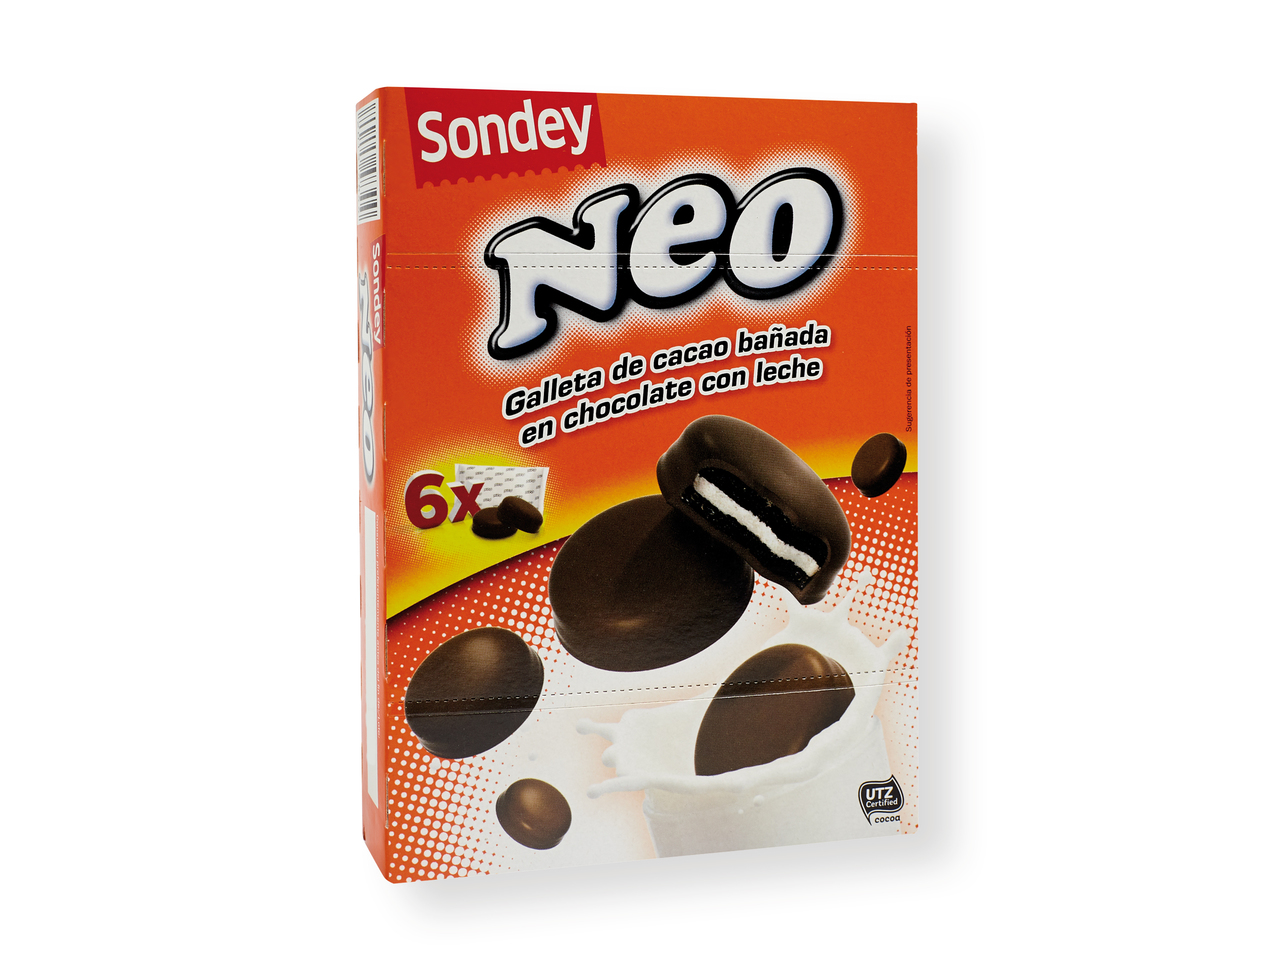 'Sondey(R)' Galletas Neo chocolate